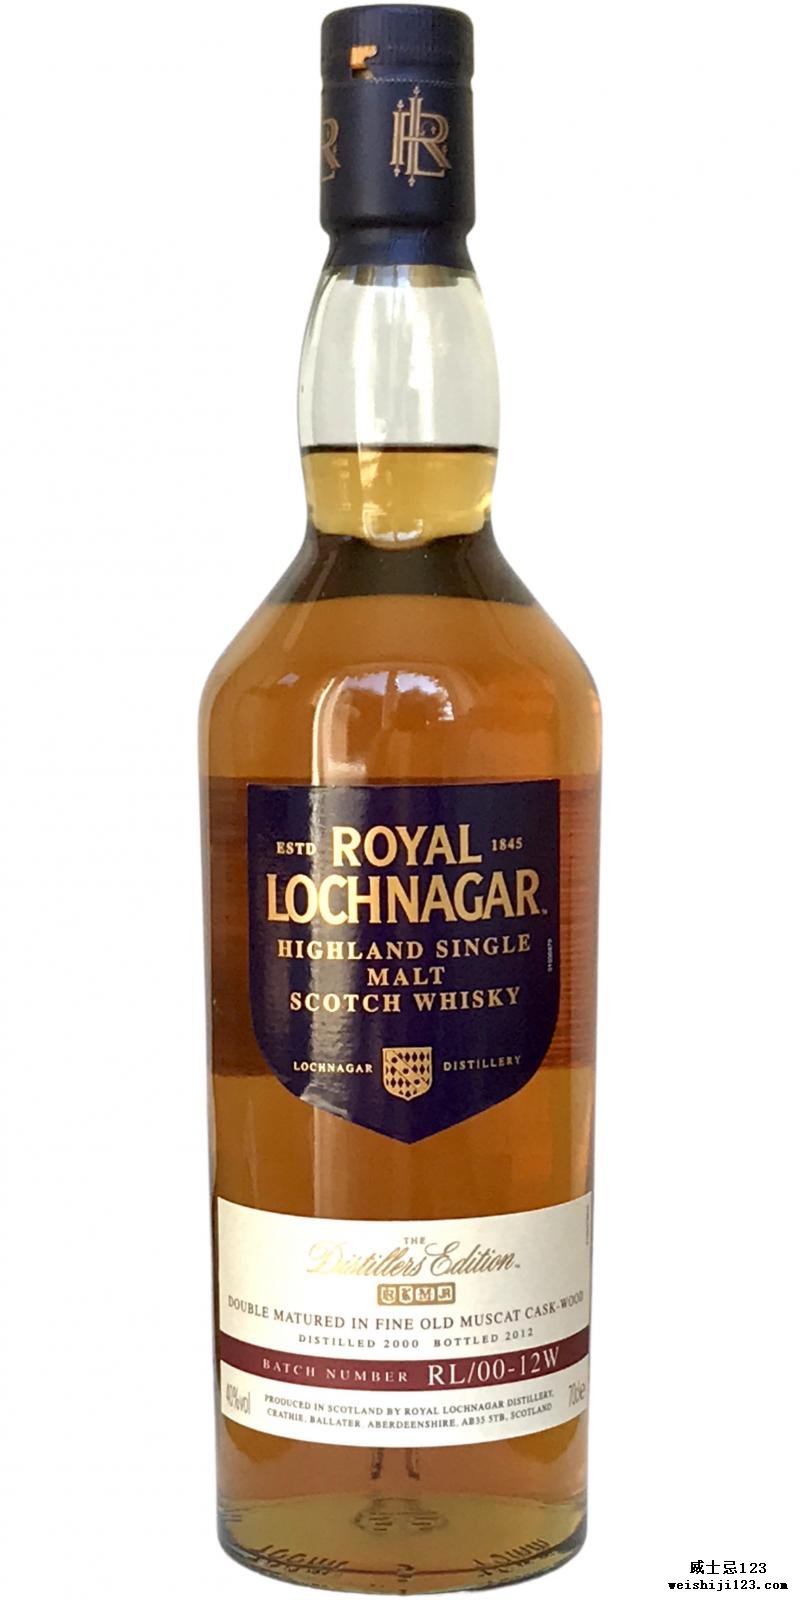 Royal Lochnagar 2000